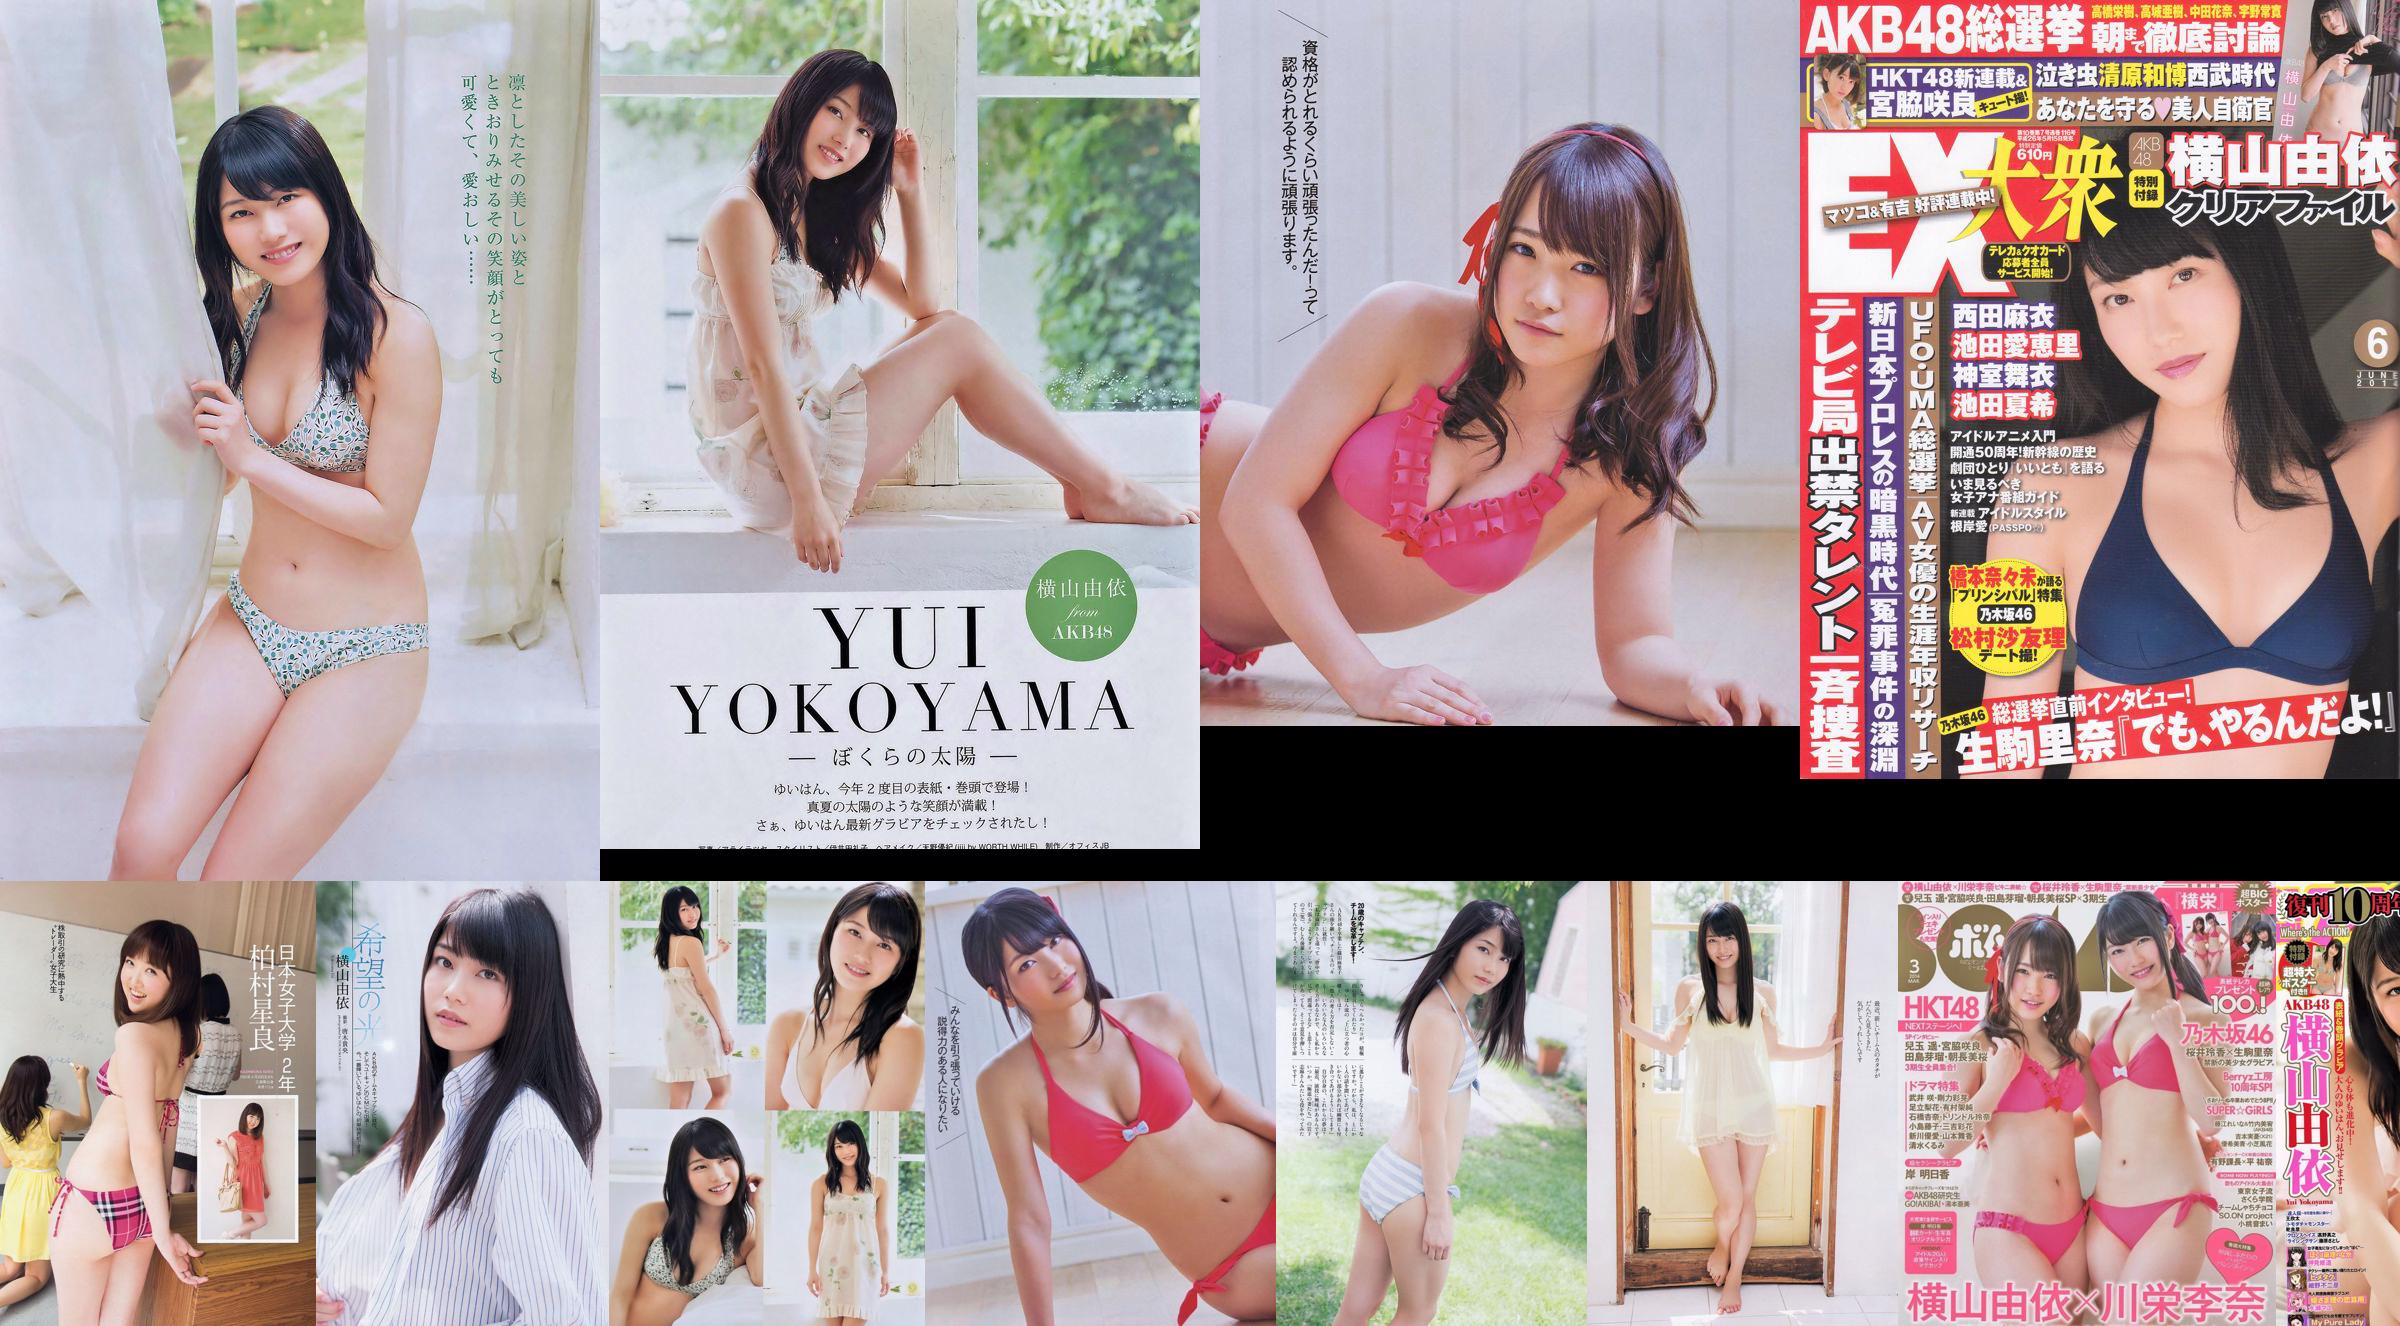 [Bomb Magazine] 2014 No.03 Yui Yokoyama Rina Kawaei Photograph No.170bf0 Page 3